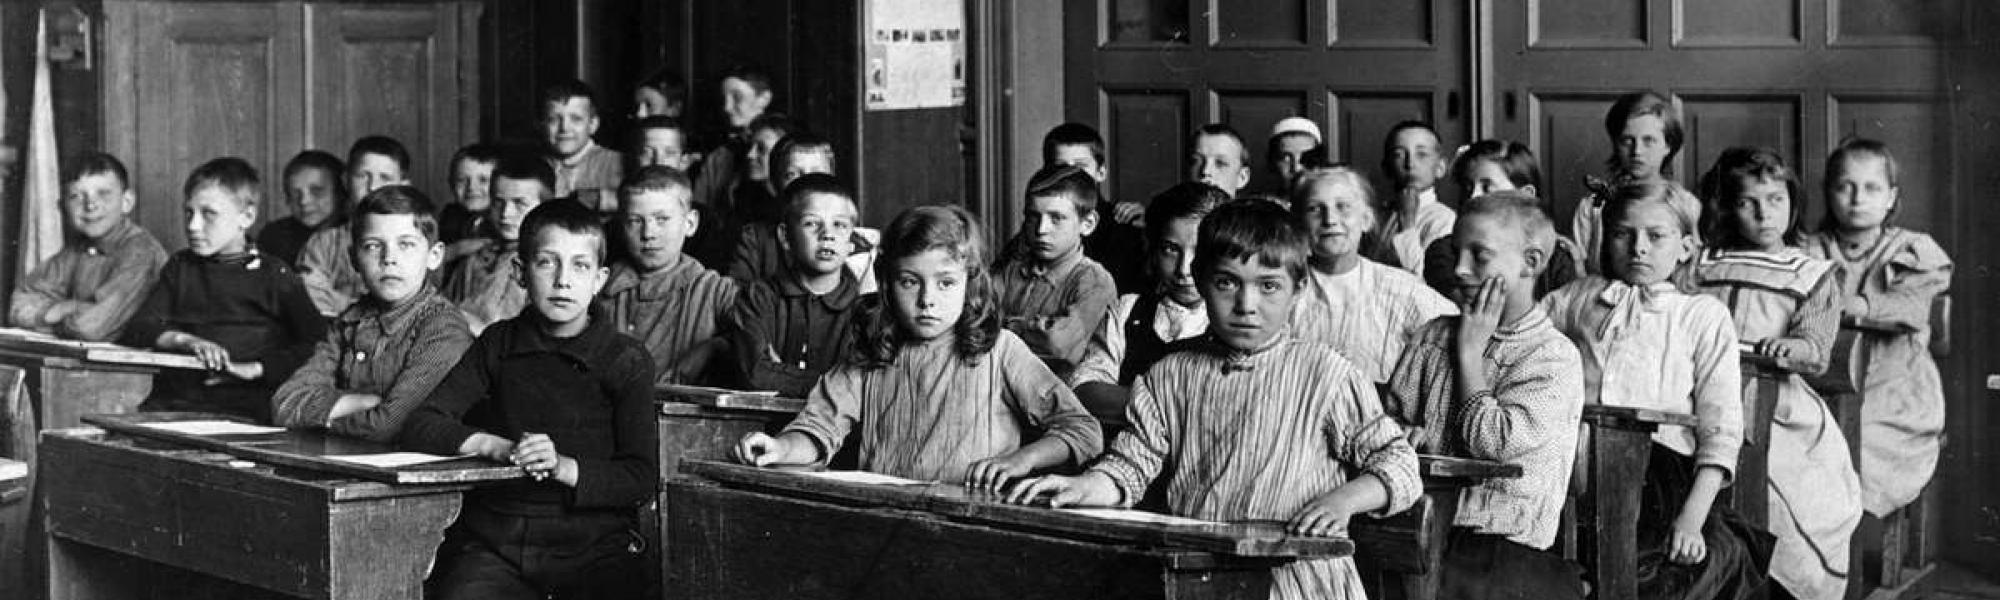 Historisch beeld van een klaslokaal met schoolkinderen